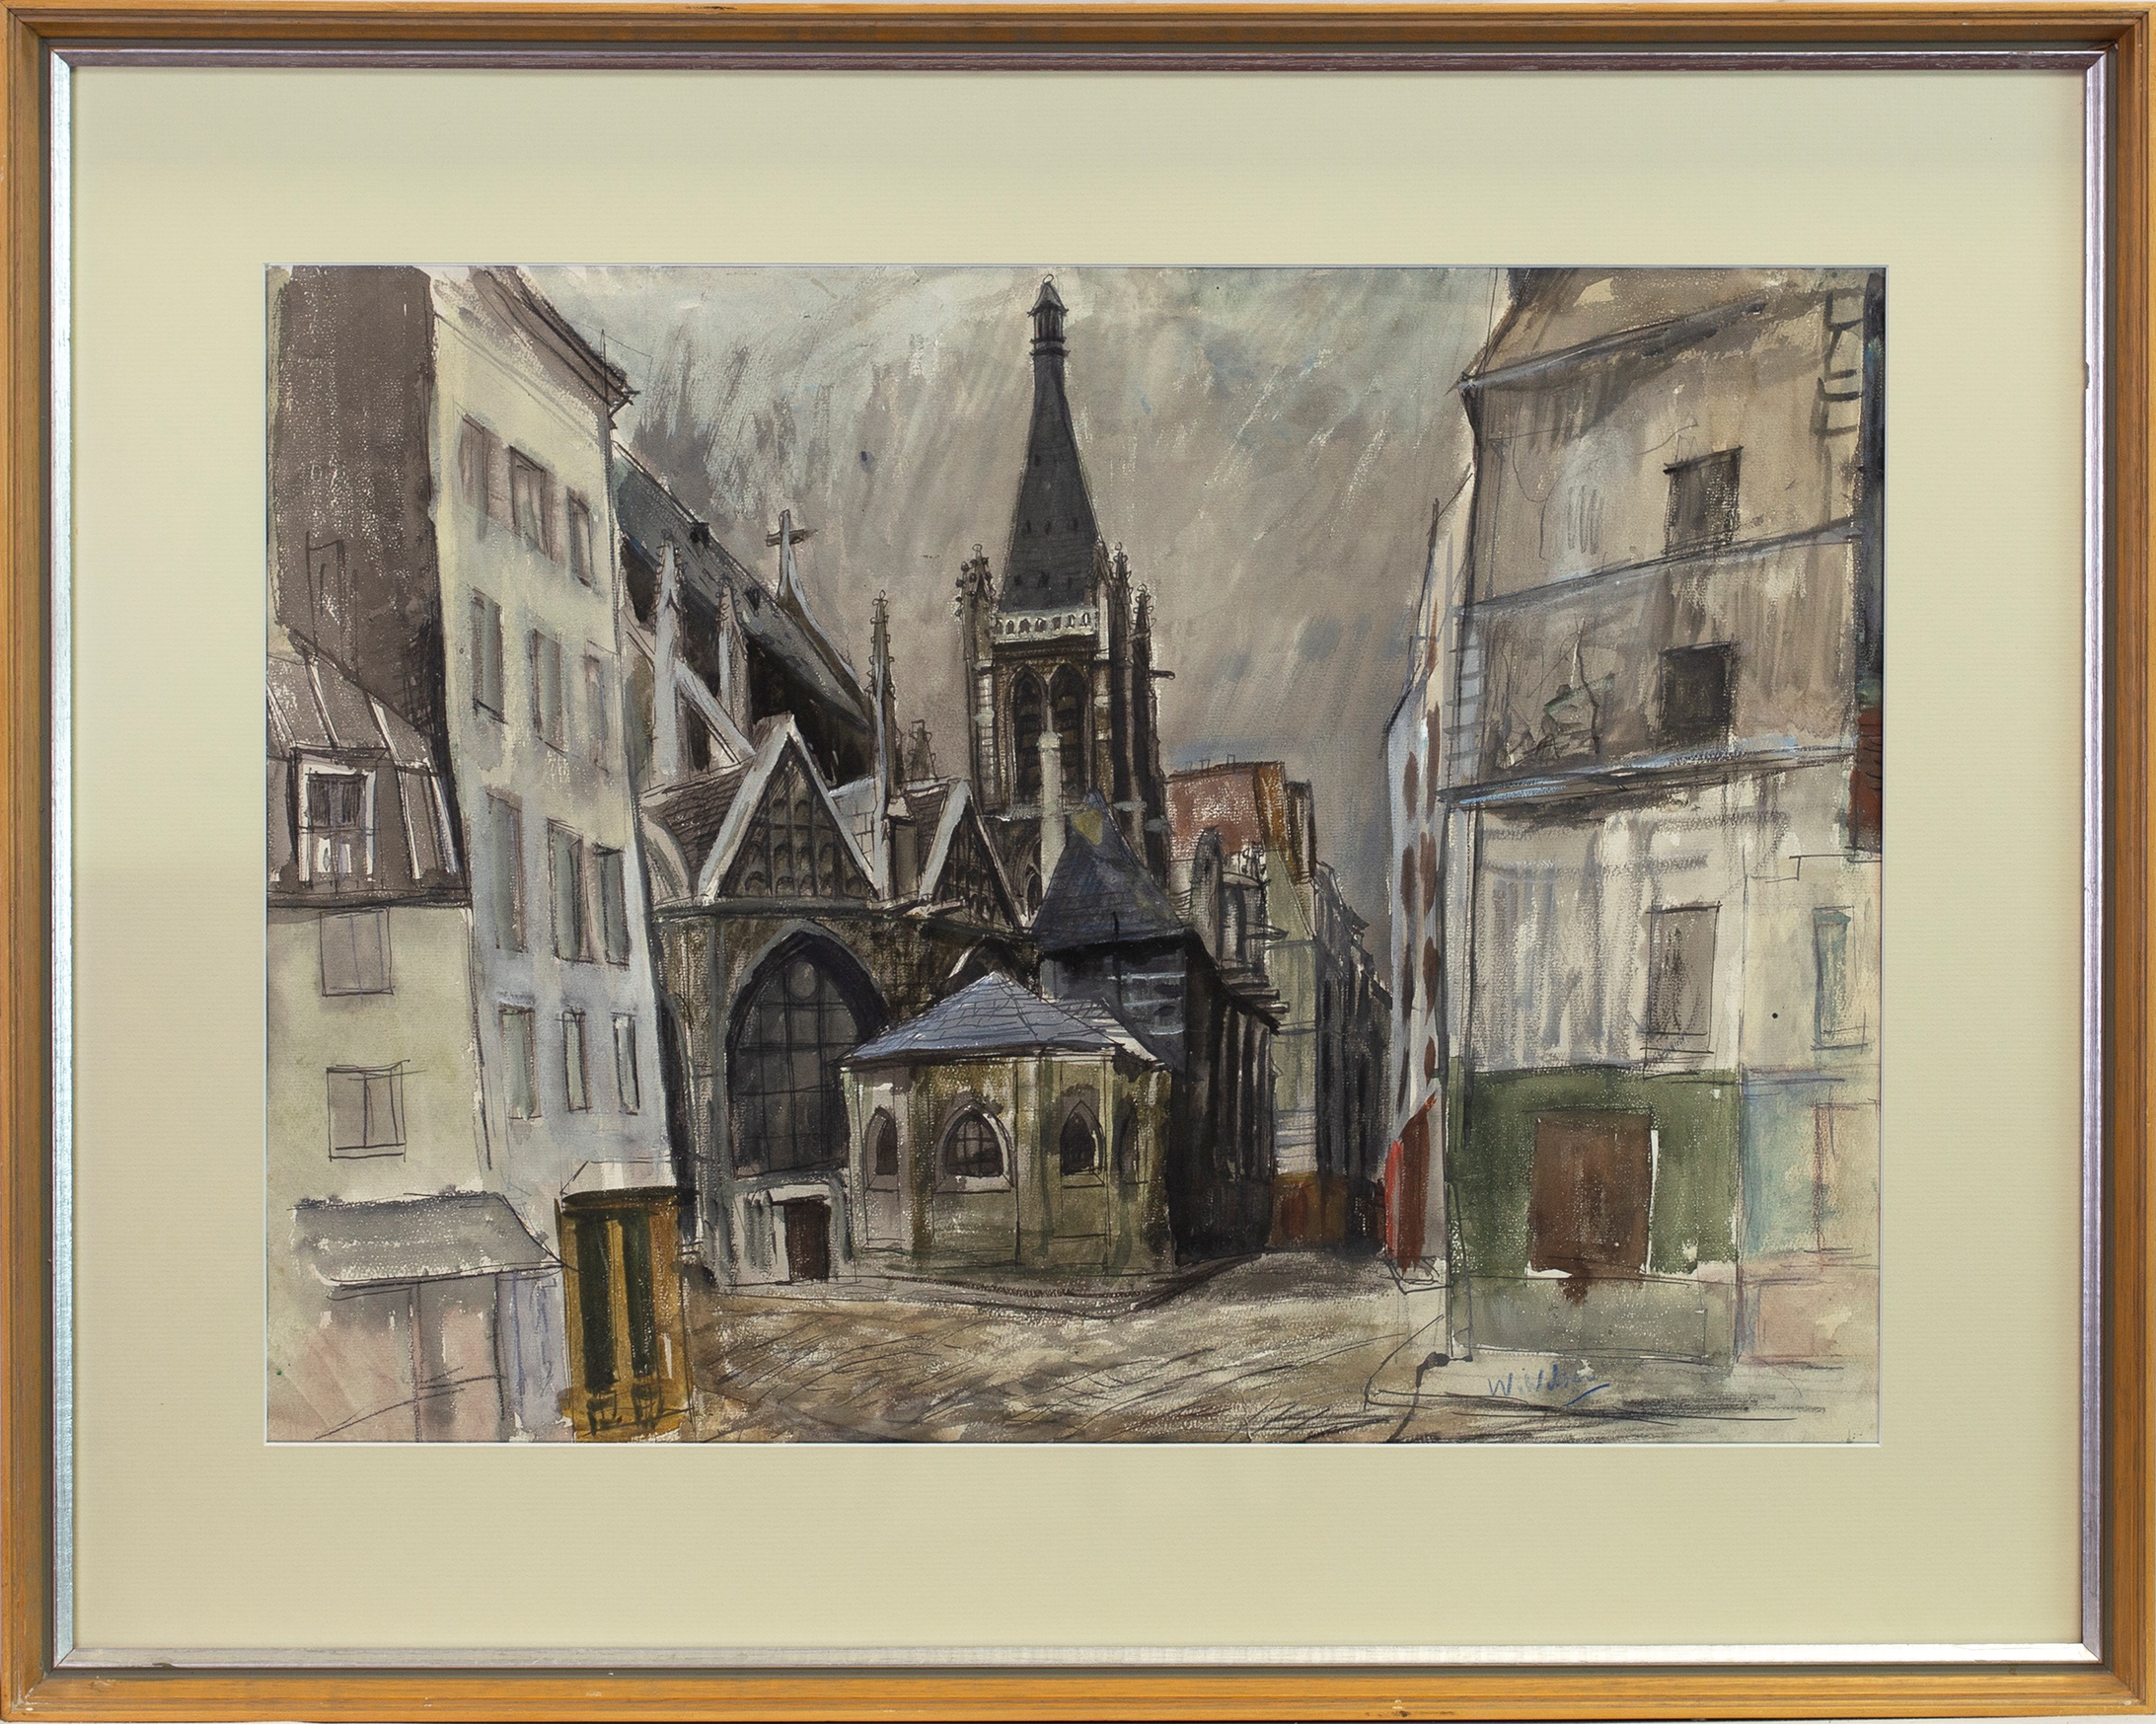 PARIS CHURCH, A WATERCOLOUR BY WILLIAM WILSON